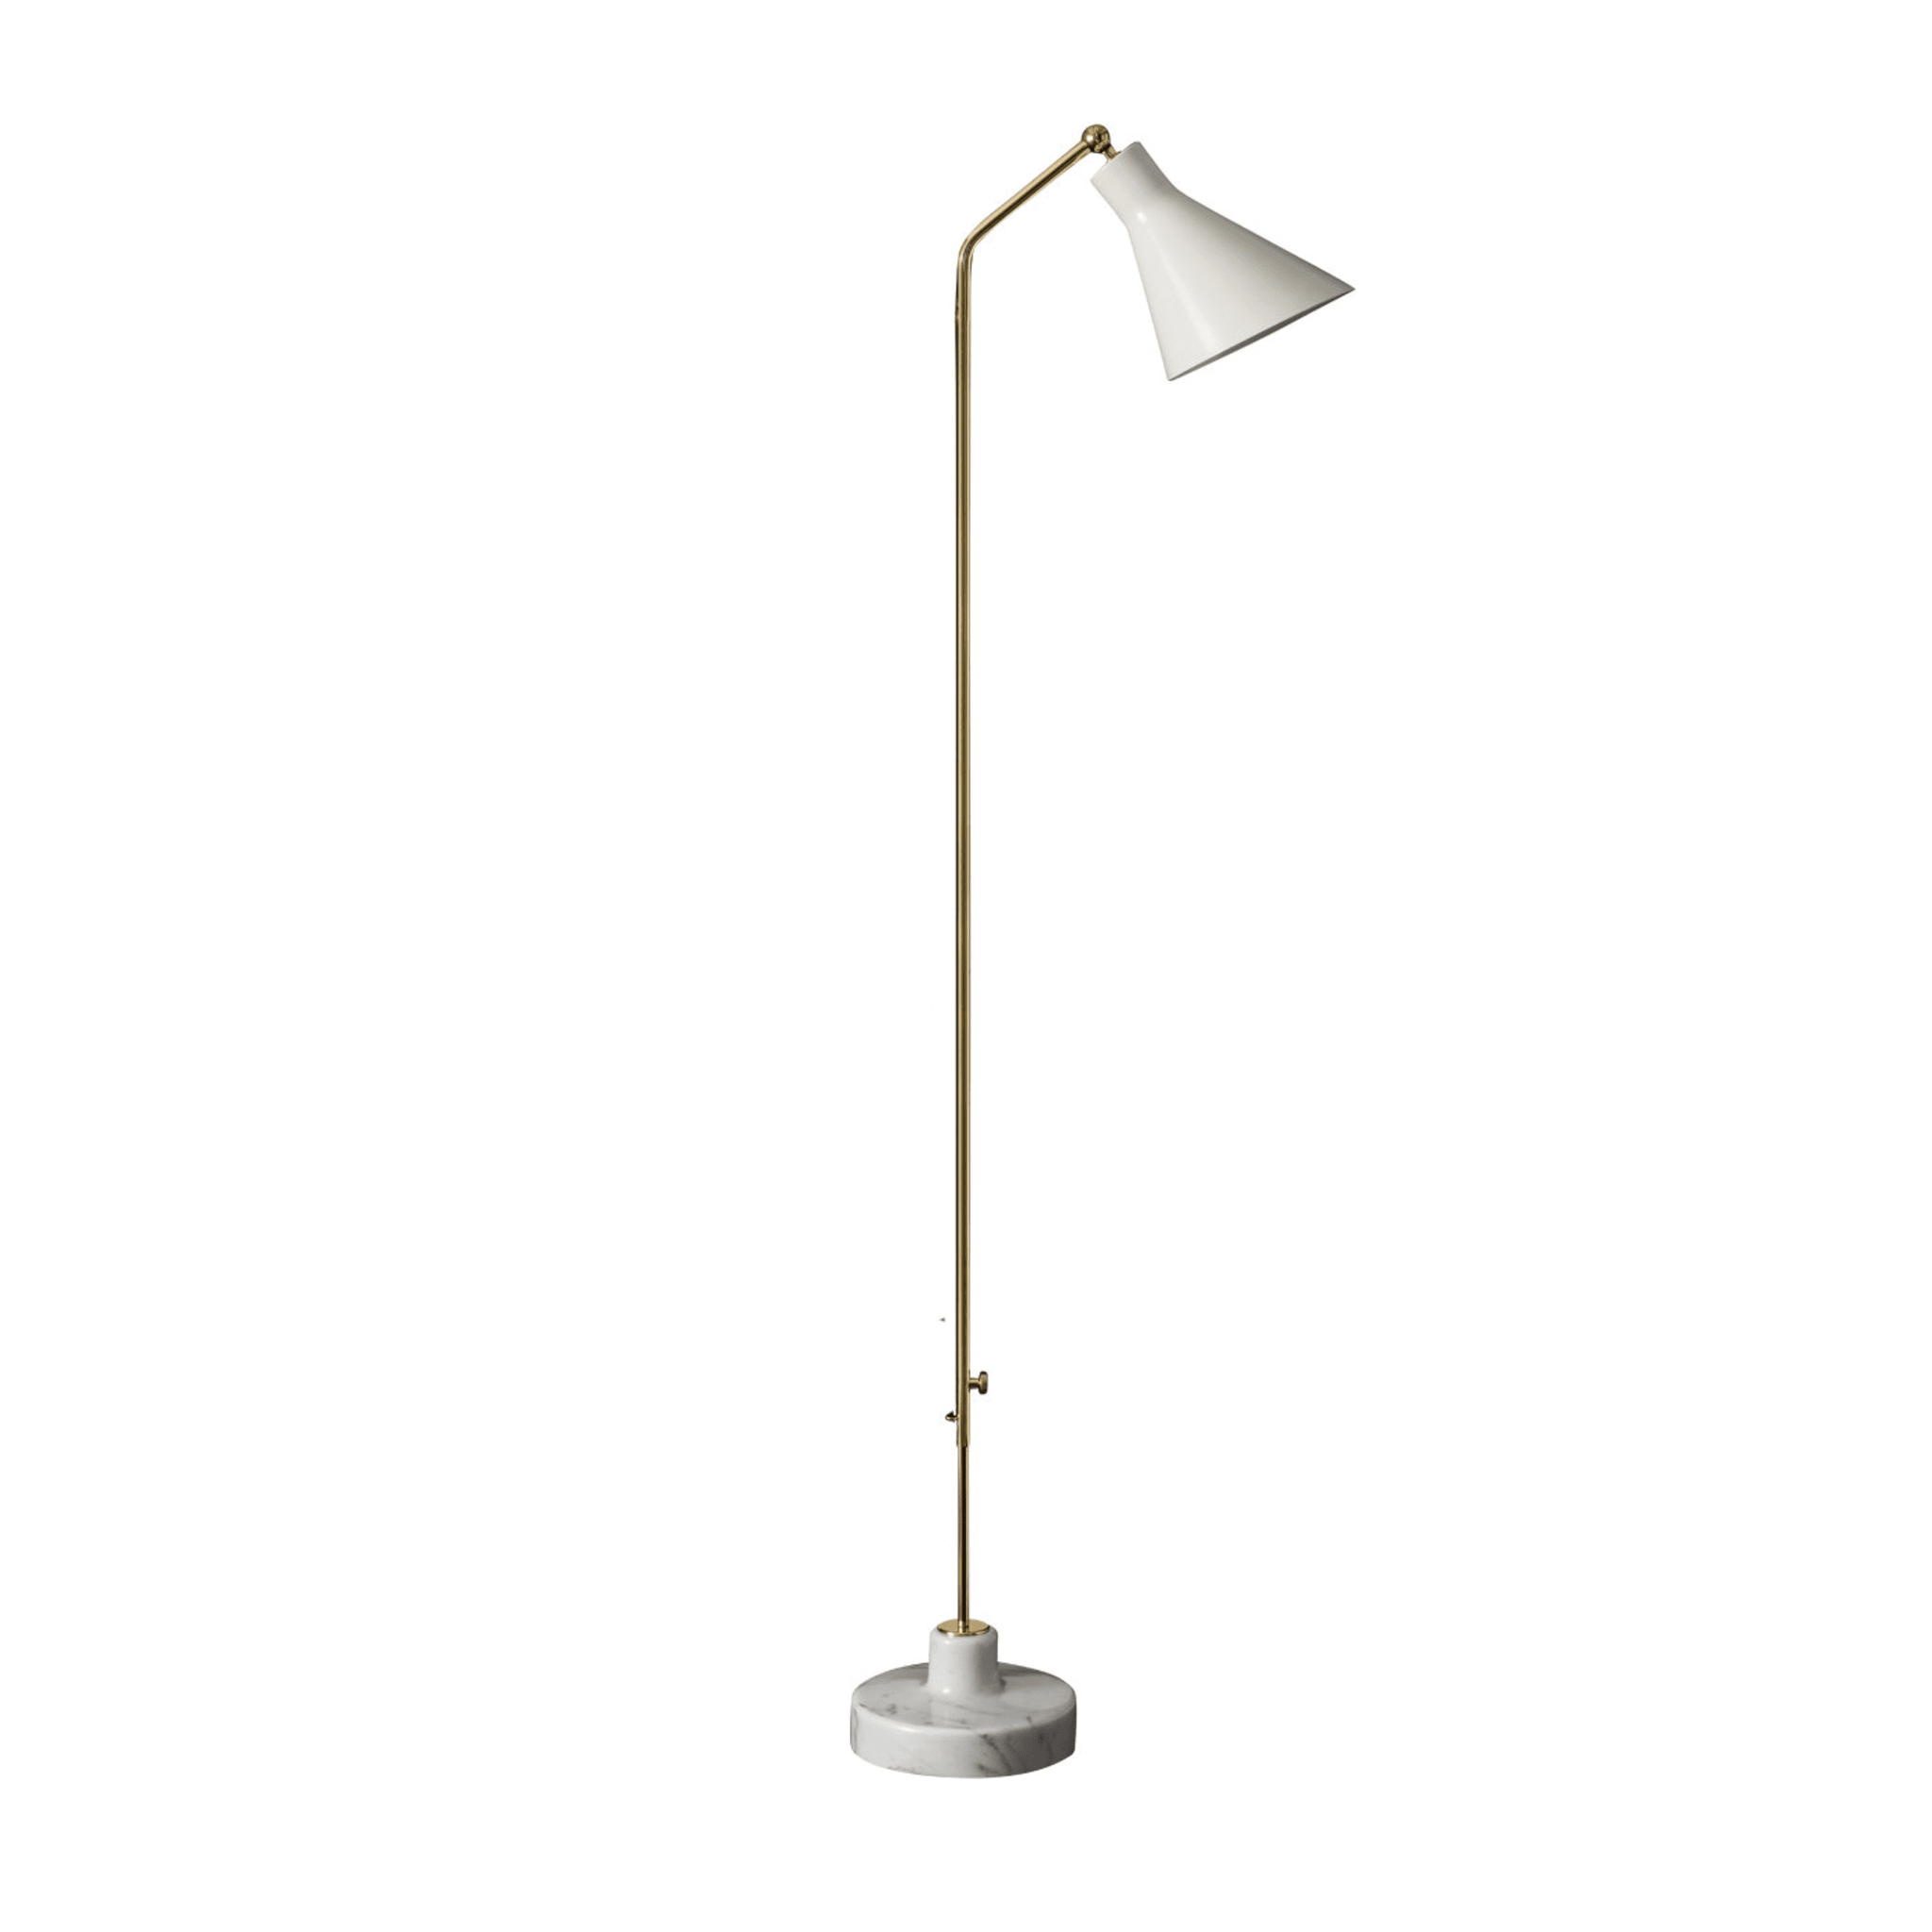 Alzabile Adjustable Lamp by Ignazio Gardella - Main view